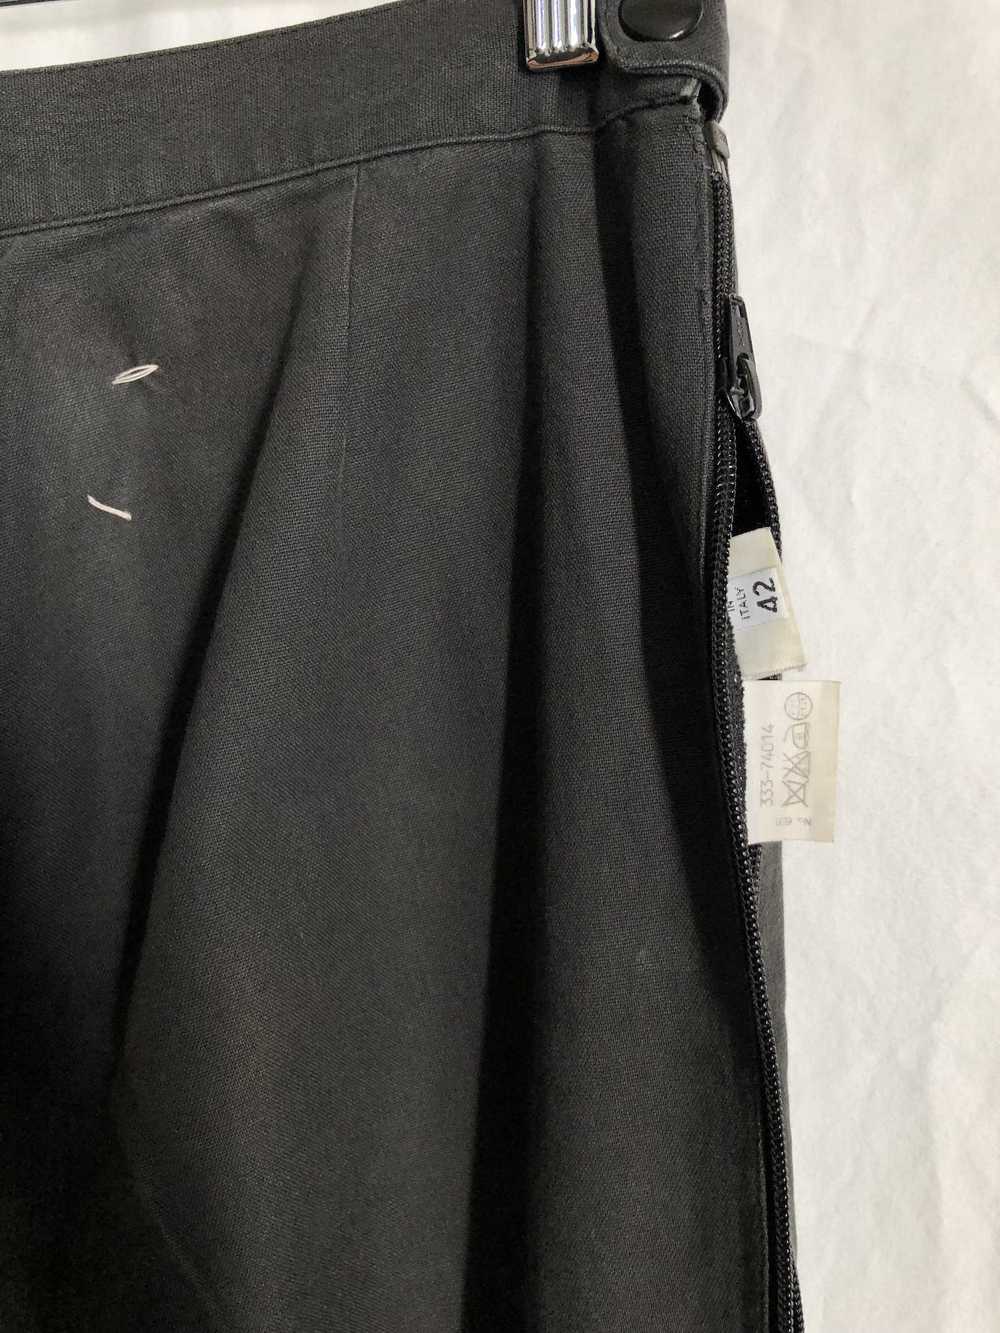 Maison Margiela SS96 wide zip pants - image 4